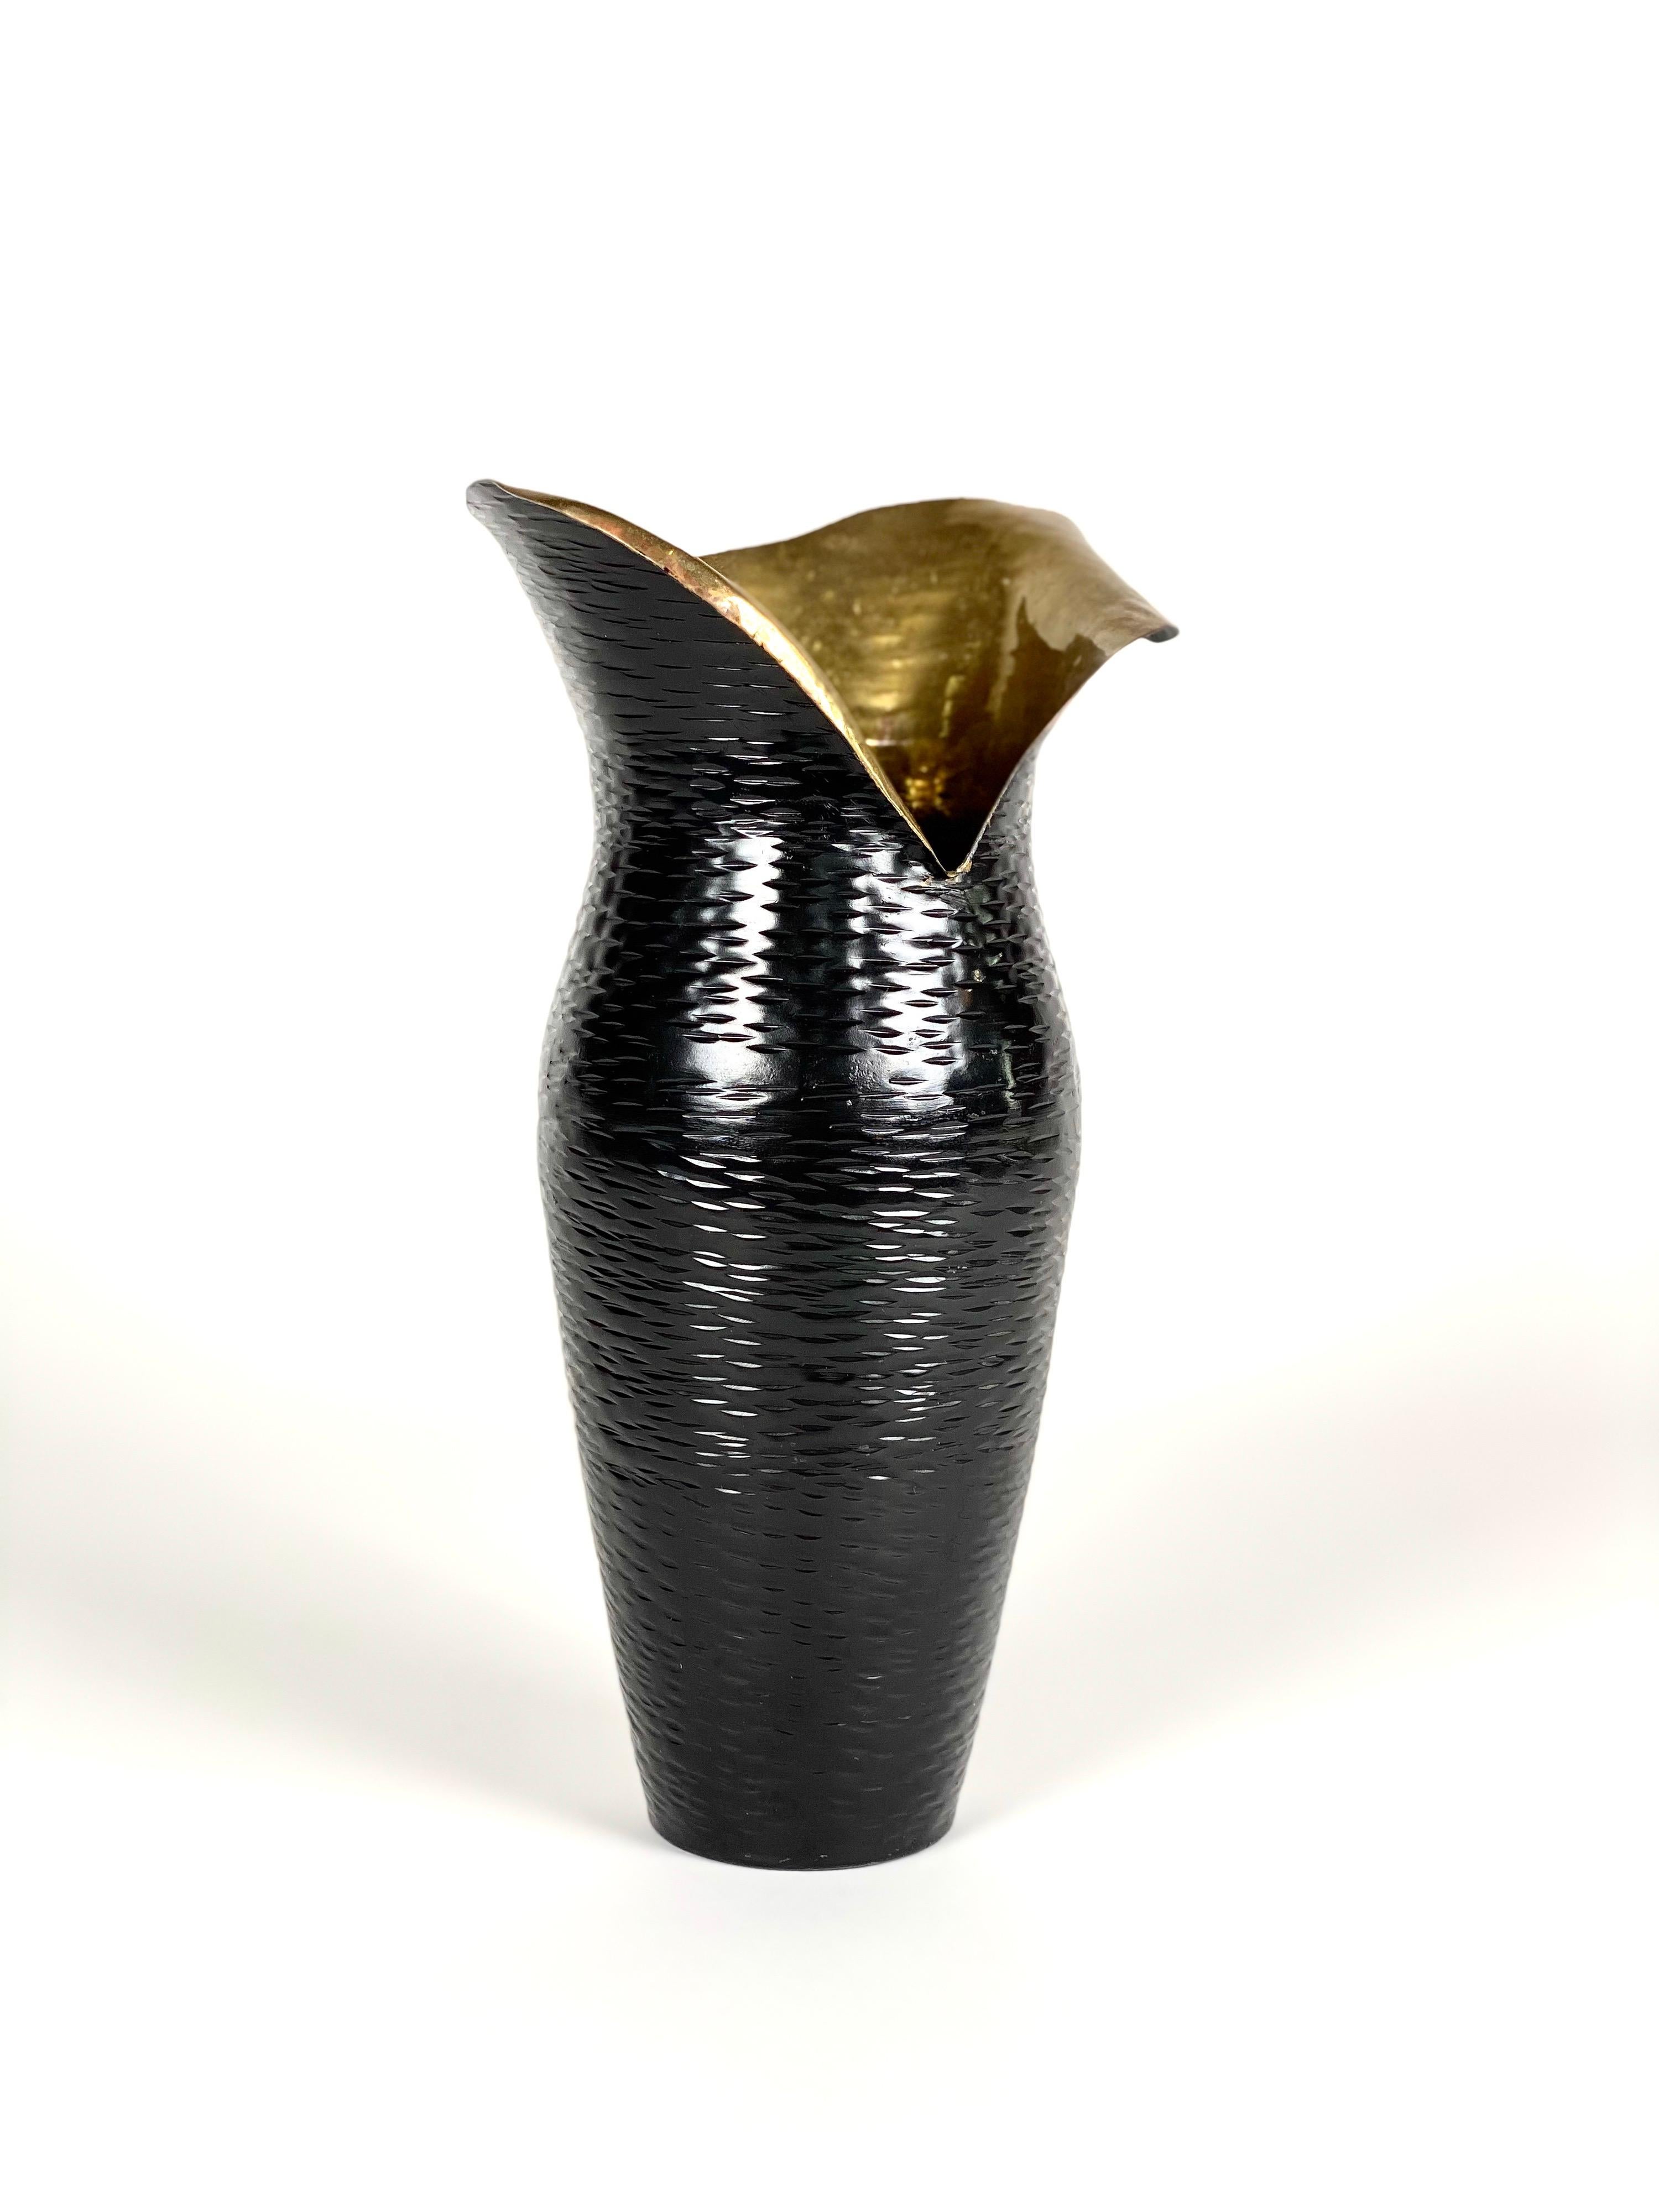 Hammered black brass vase

Size: 9